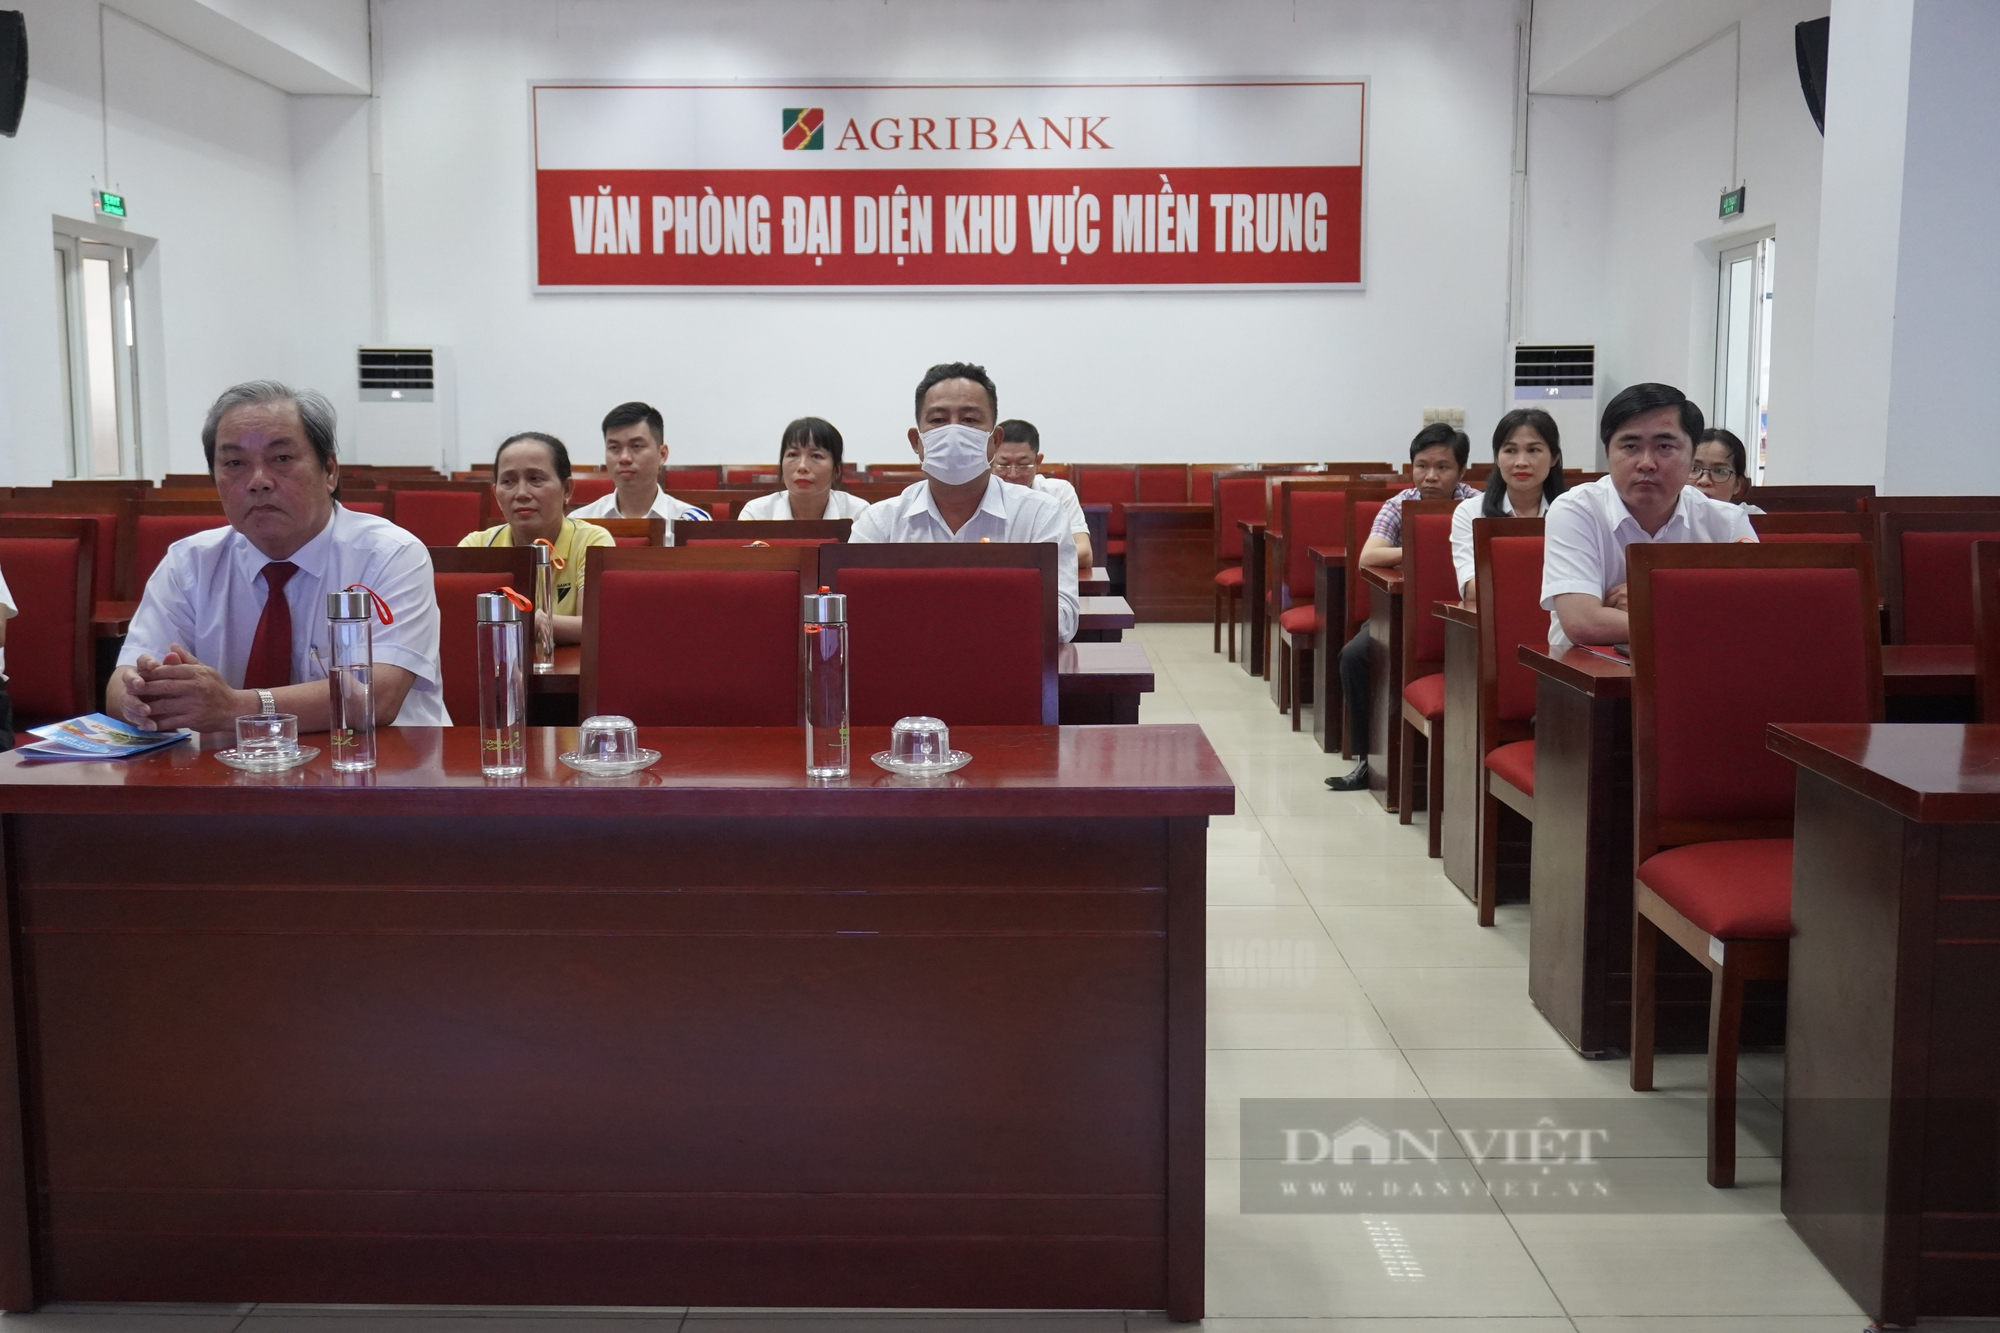 Agribank Nam Đà Nẵng trao giải thưởng Chương trình “Trao gửi niềm tin - Hành trình gắn kết” - Ảnh 4.